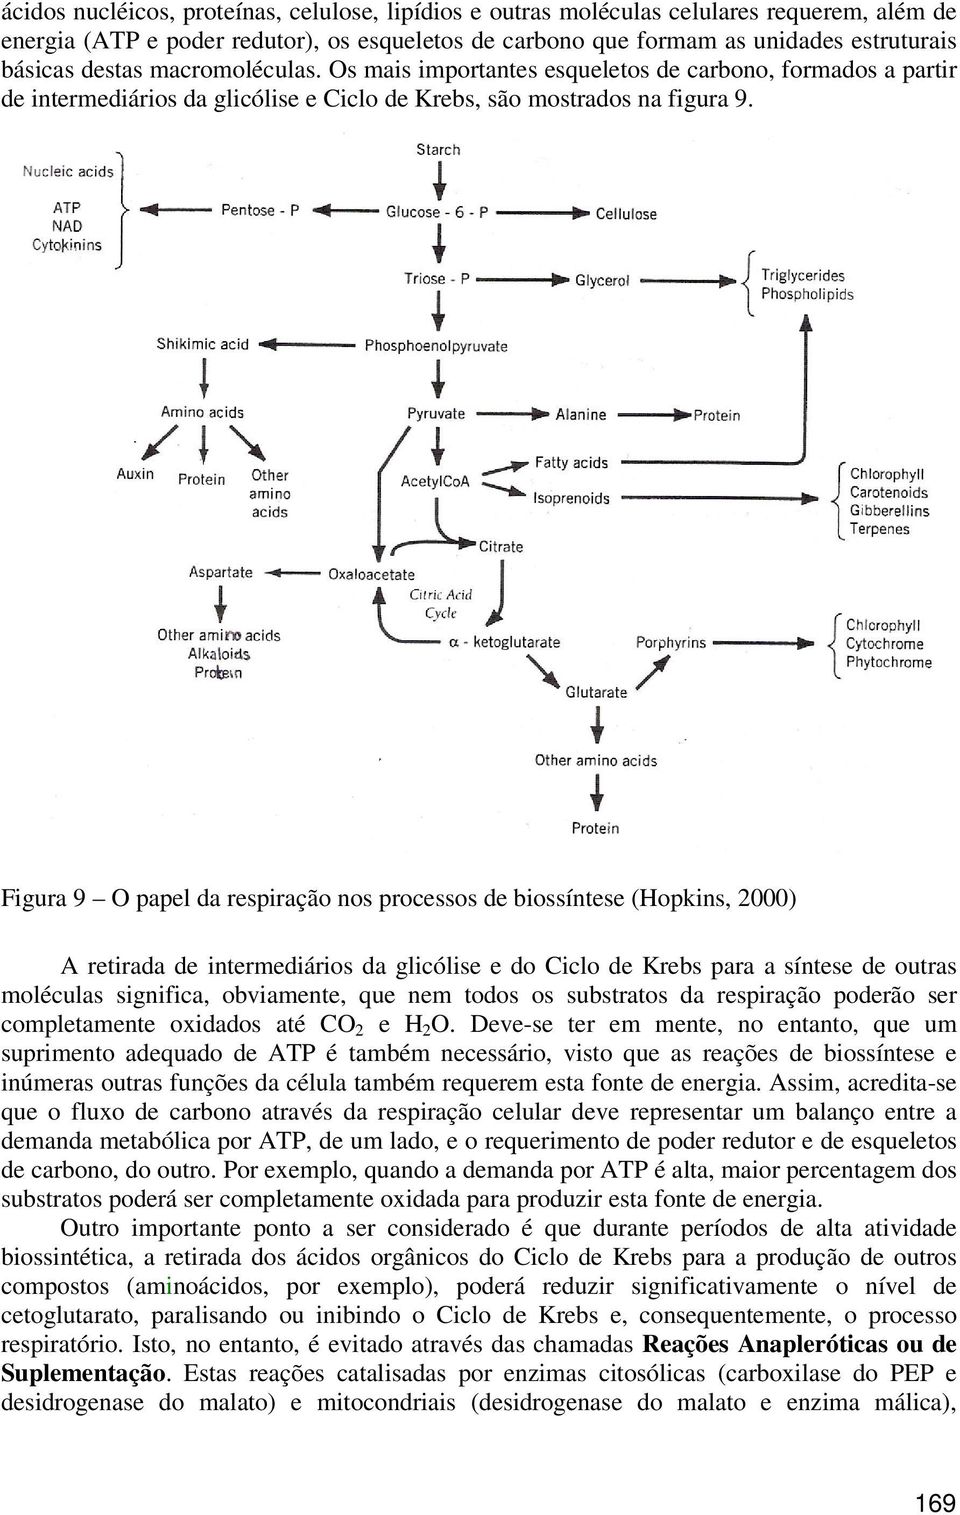 Figura 9 O papel da respiração nos processos de biossíntese (Hopkins, 2000) A retirada de intermediários da glicólise e do Ciclo de Krebs para a síntese de outras moléculas significa, obviamente, que